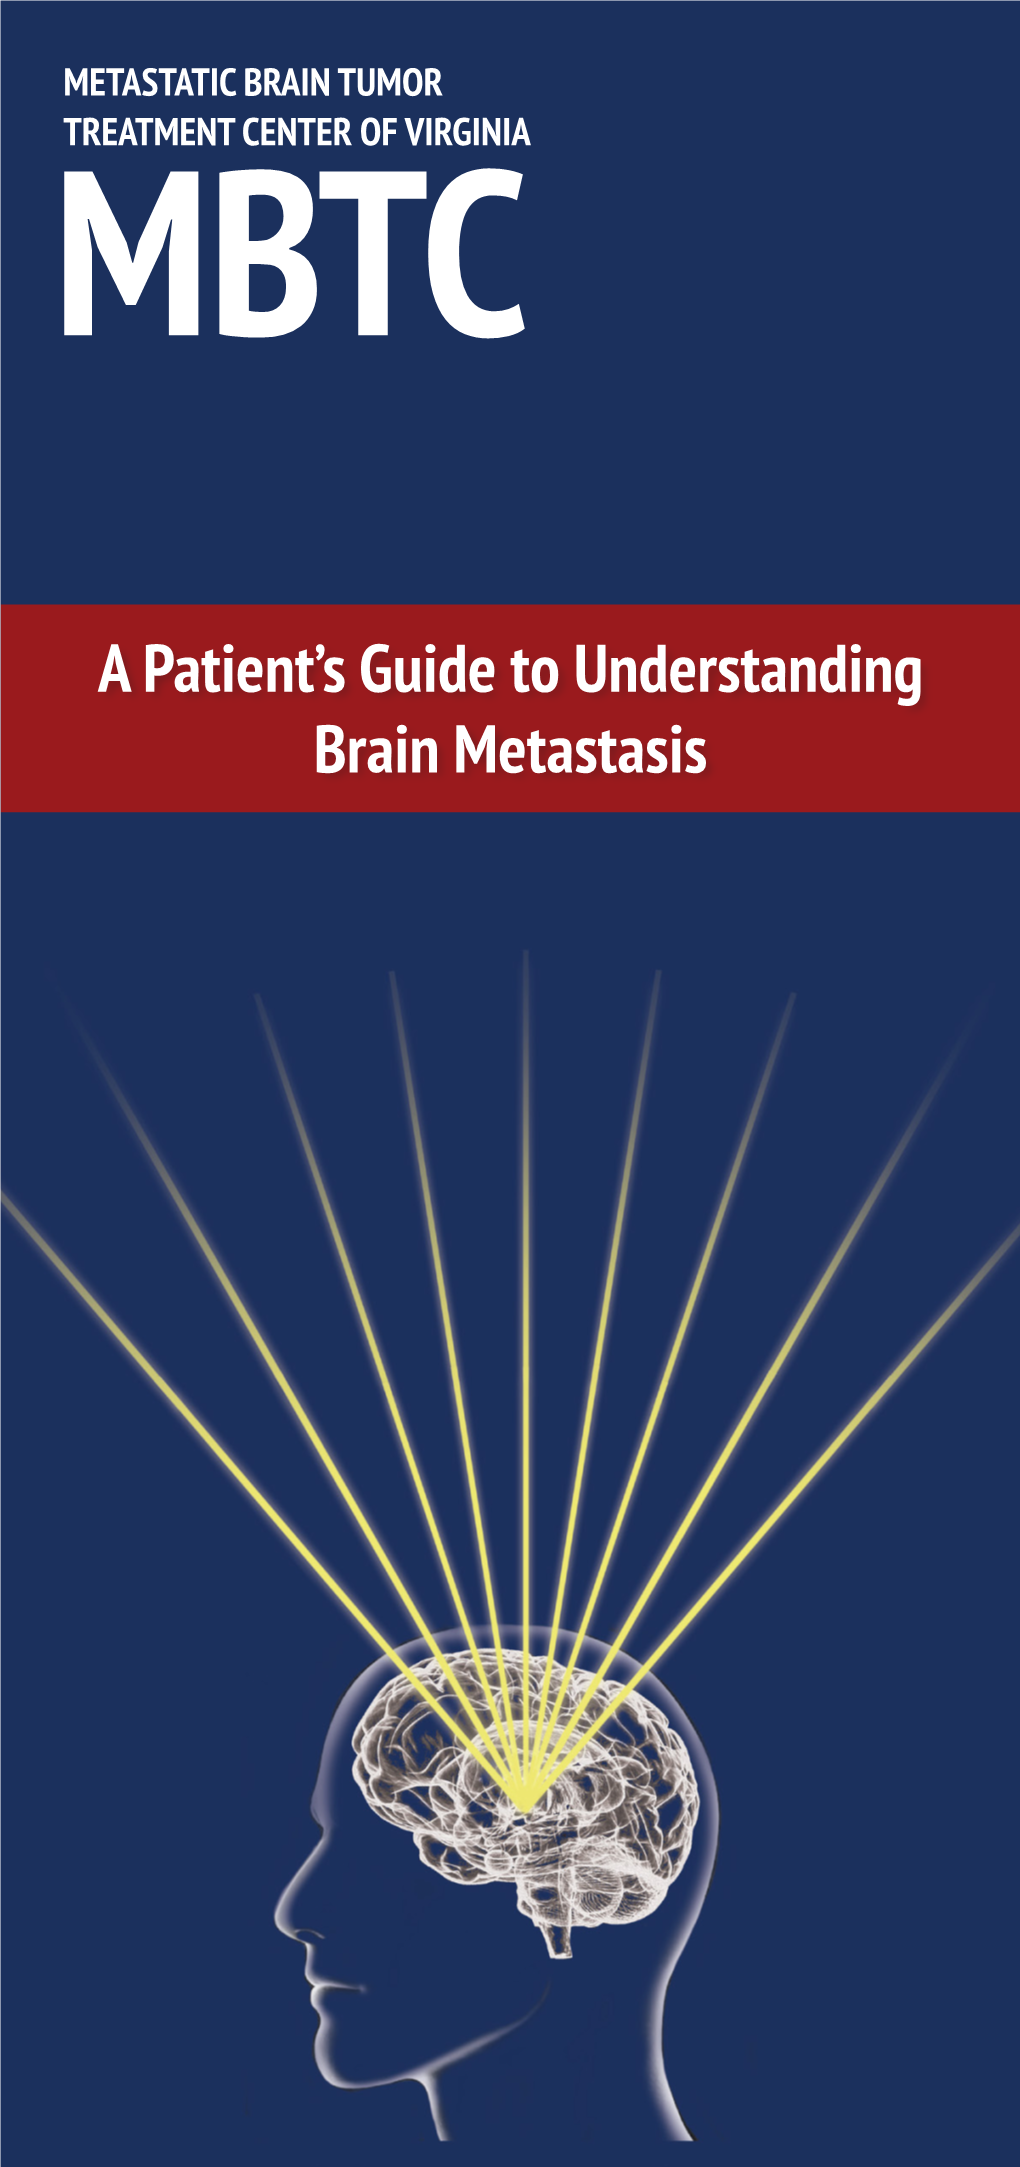 A Patient's Guide to Understanding Brain Metastasis